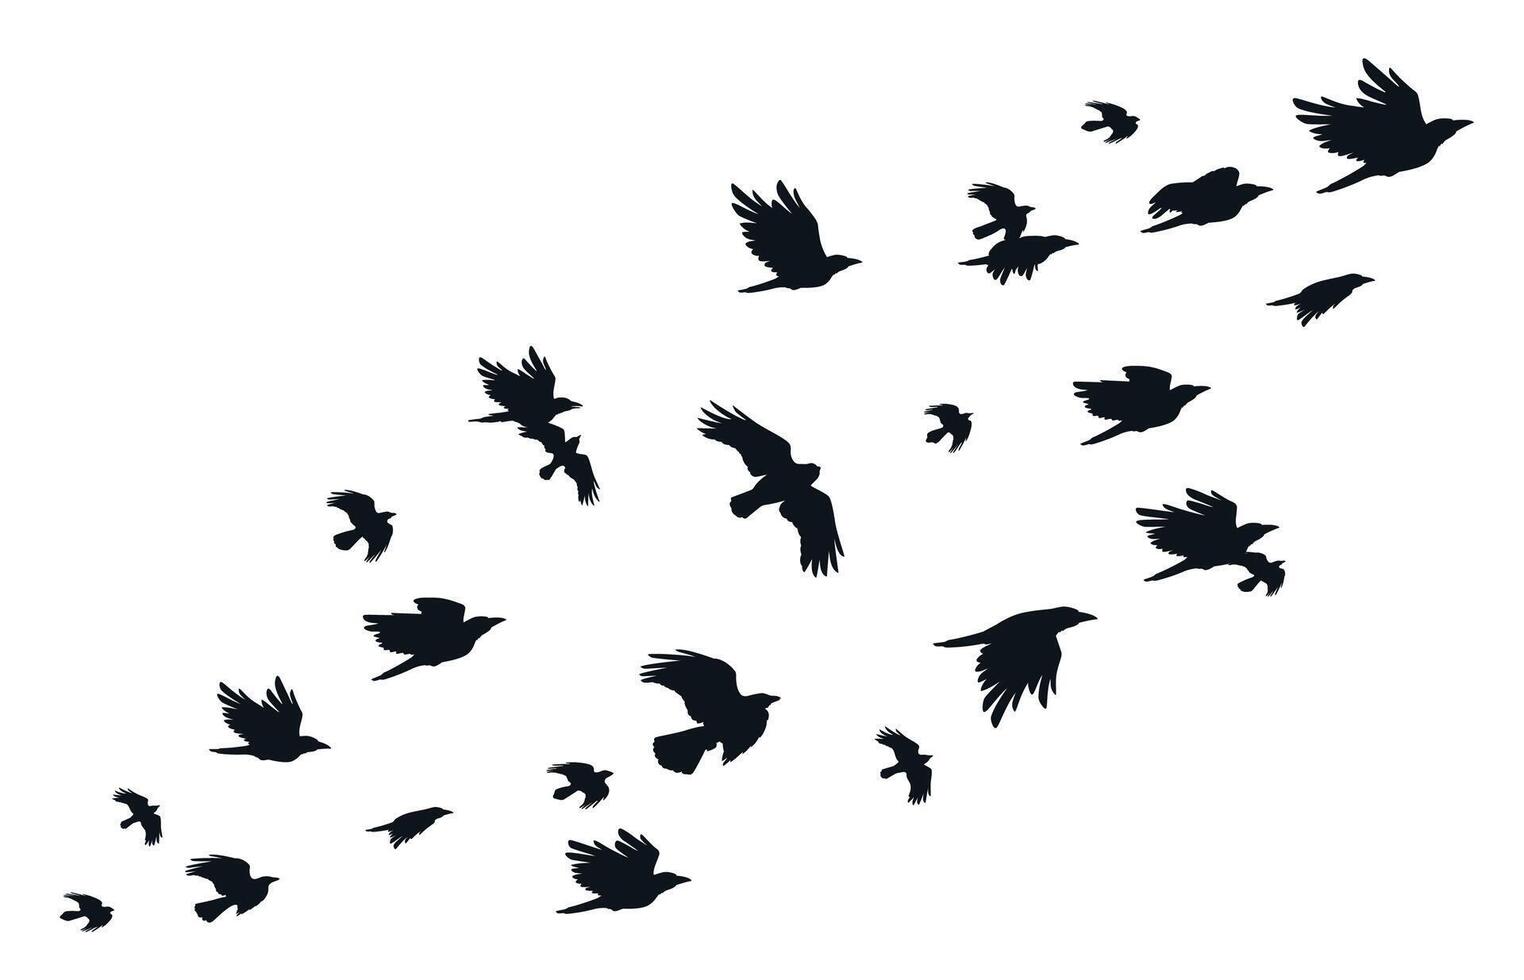 kudde van kraaien. vliegend zwart vogelstand in lucht monochroom fladderen raaf silhouet, migreren vlucht groep van wild torens ornithologie concept. vector illustratie